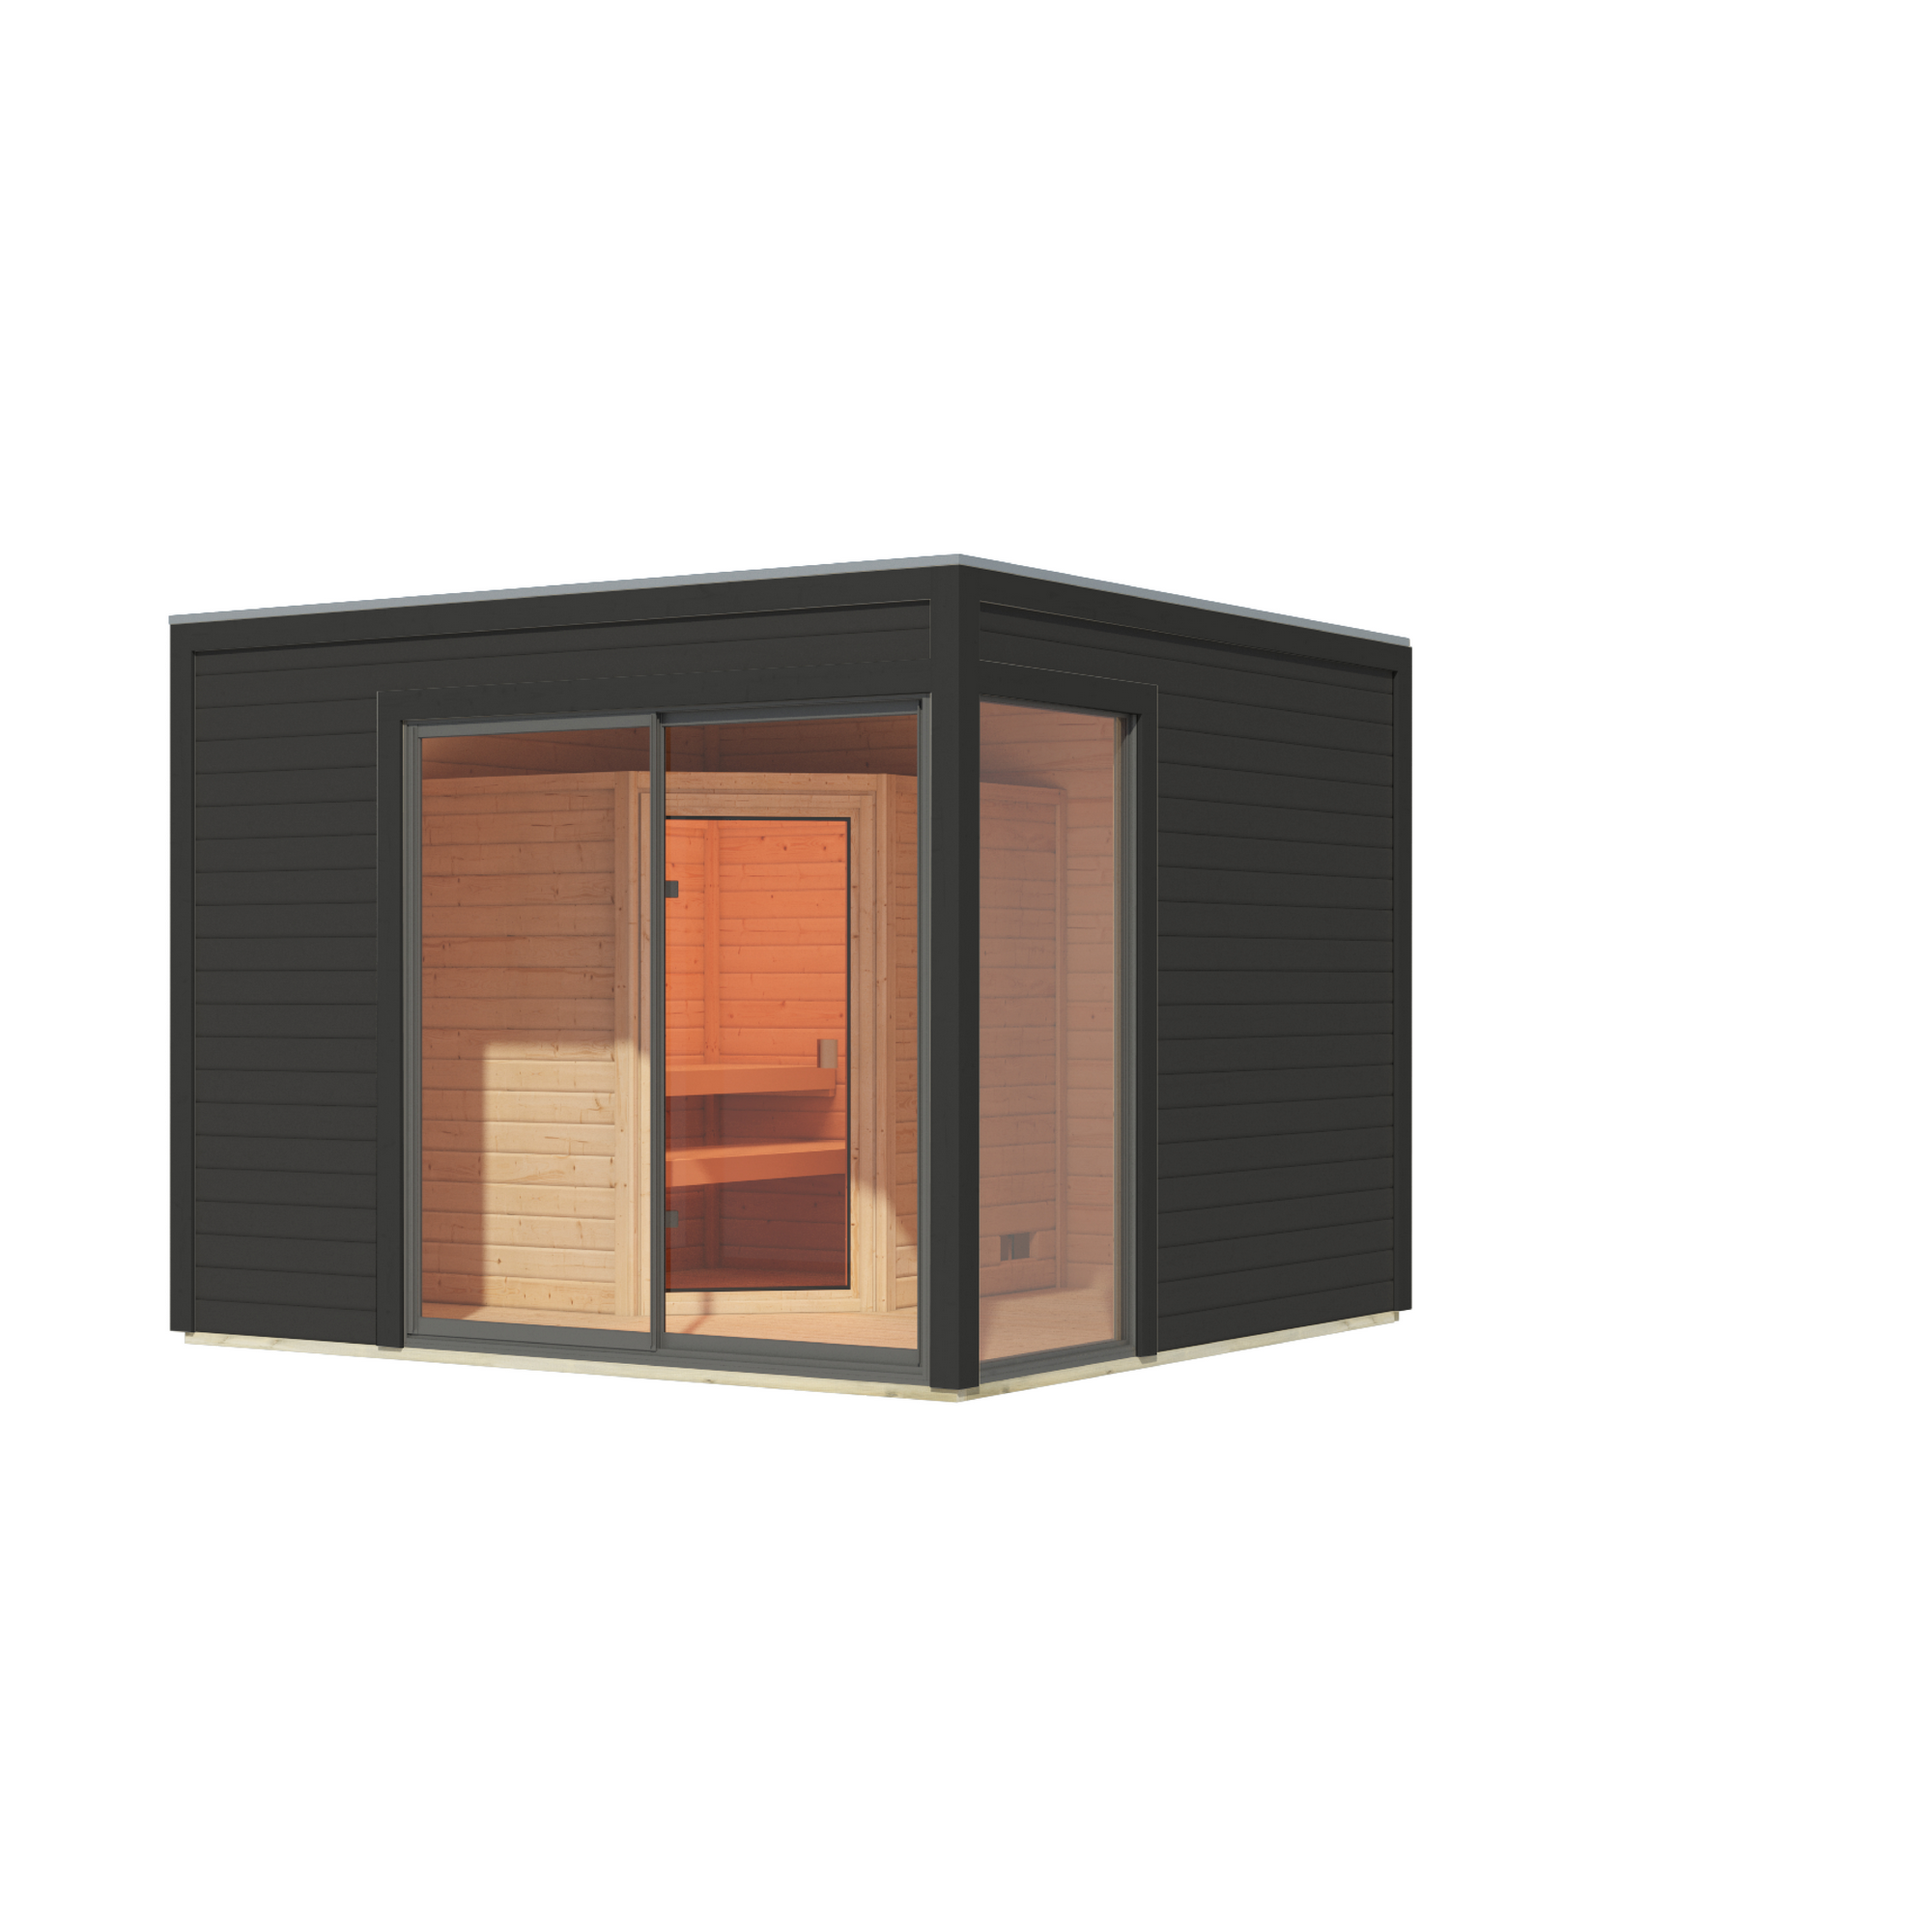 Gartenhaus mit Sauna 'Enrique 1 Variante A' anthrazit 308 x 308 x 242 cm + product picture